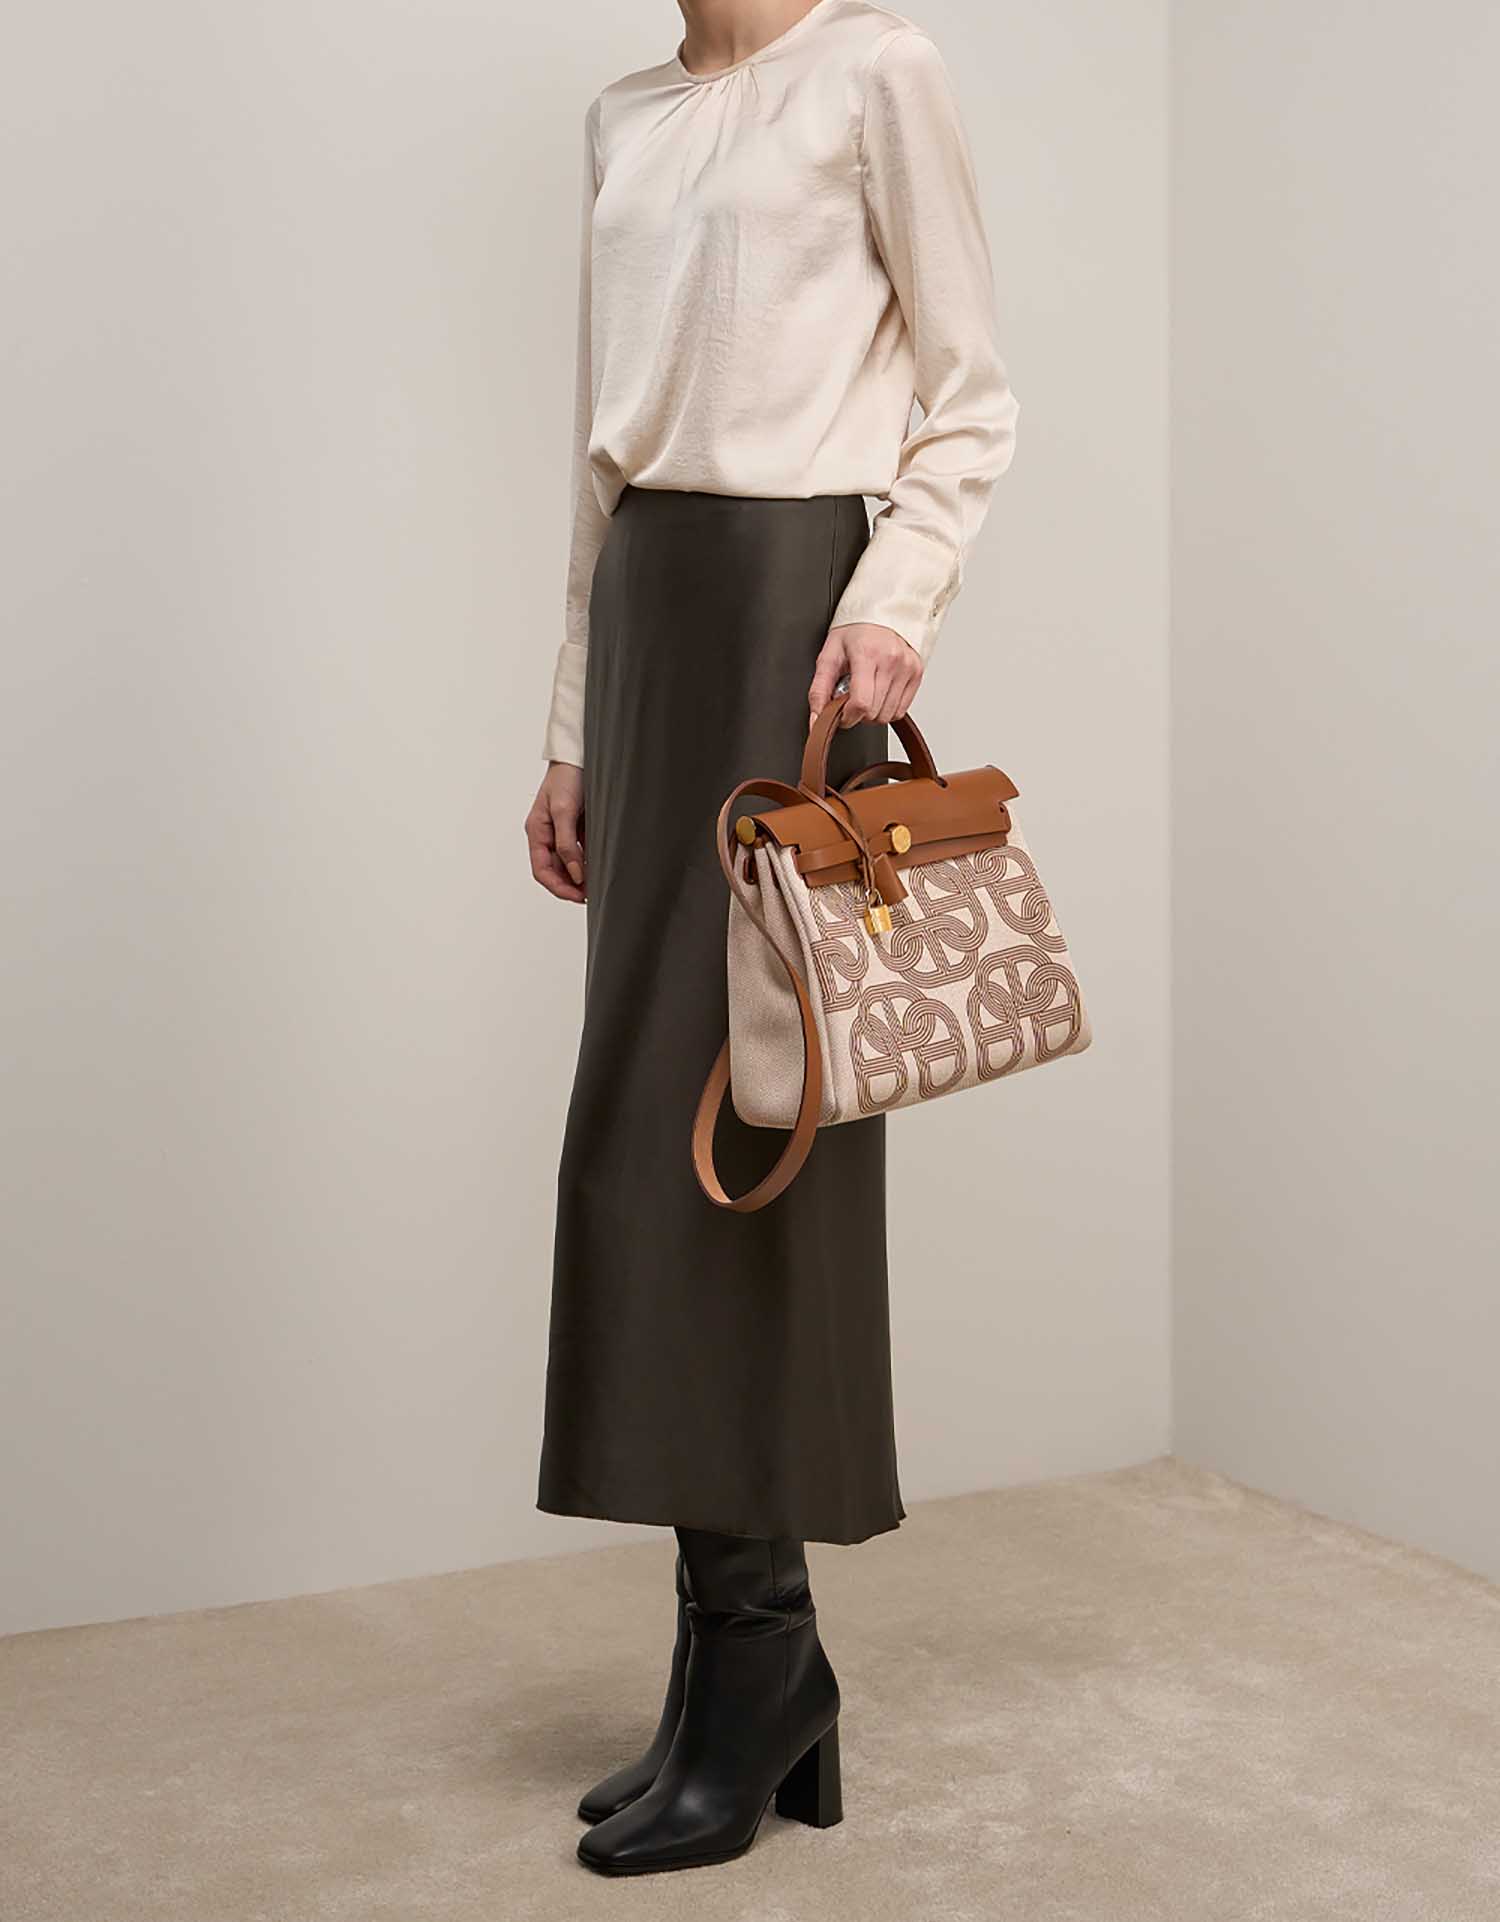 Hermès Herbag 31 Fauve-Ecru-Beige auf Model | Verkaufen Sie Ihre Designertasche auf Saclab.com